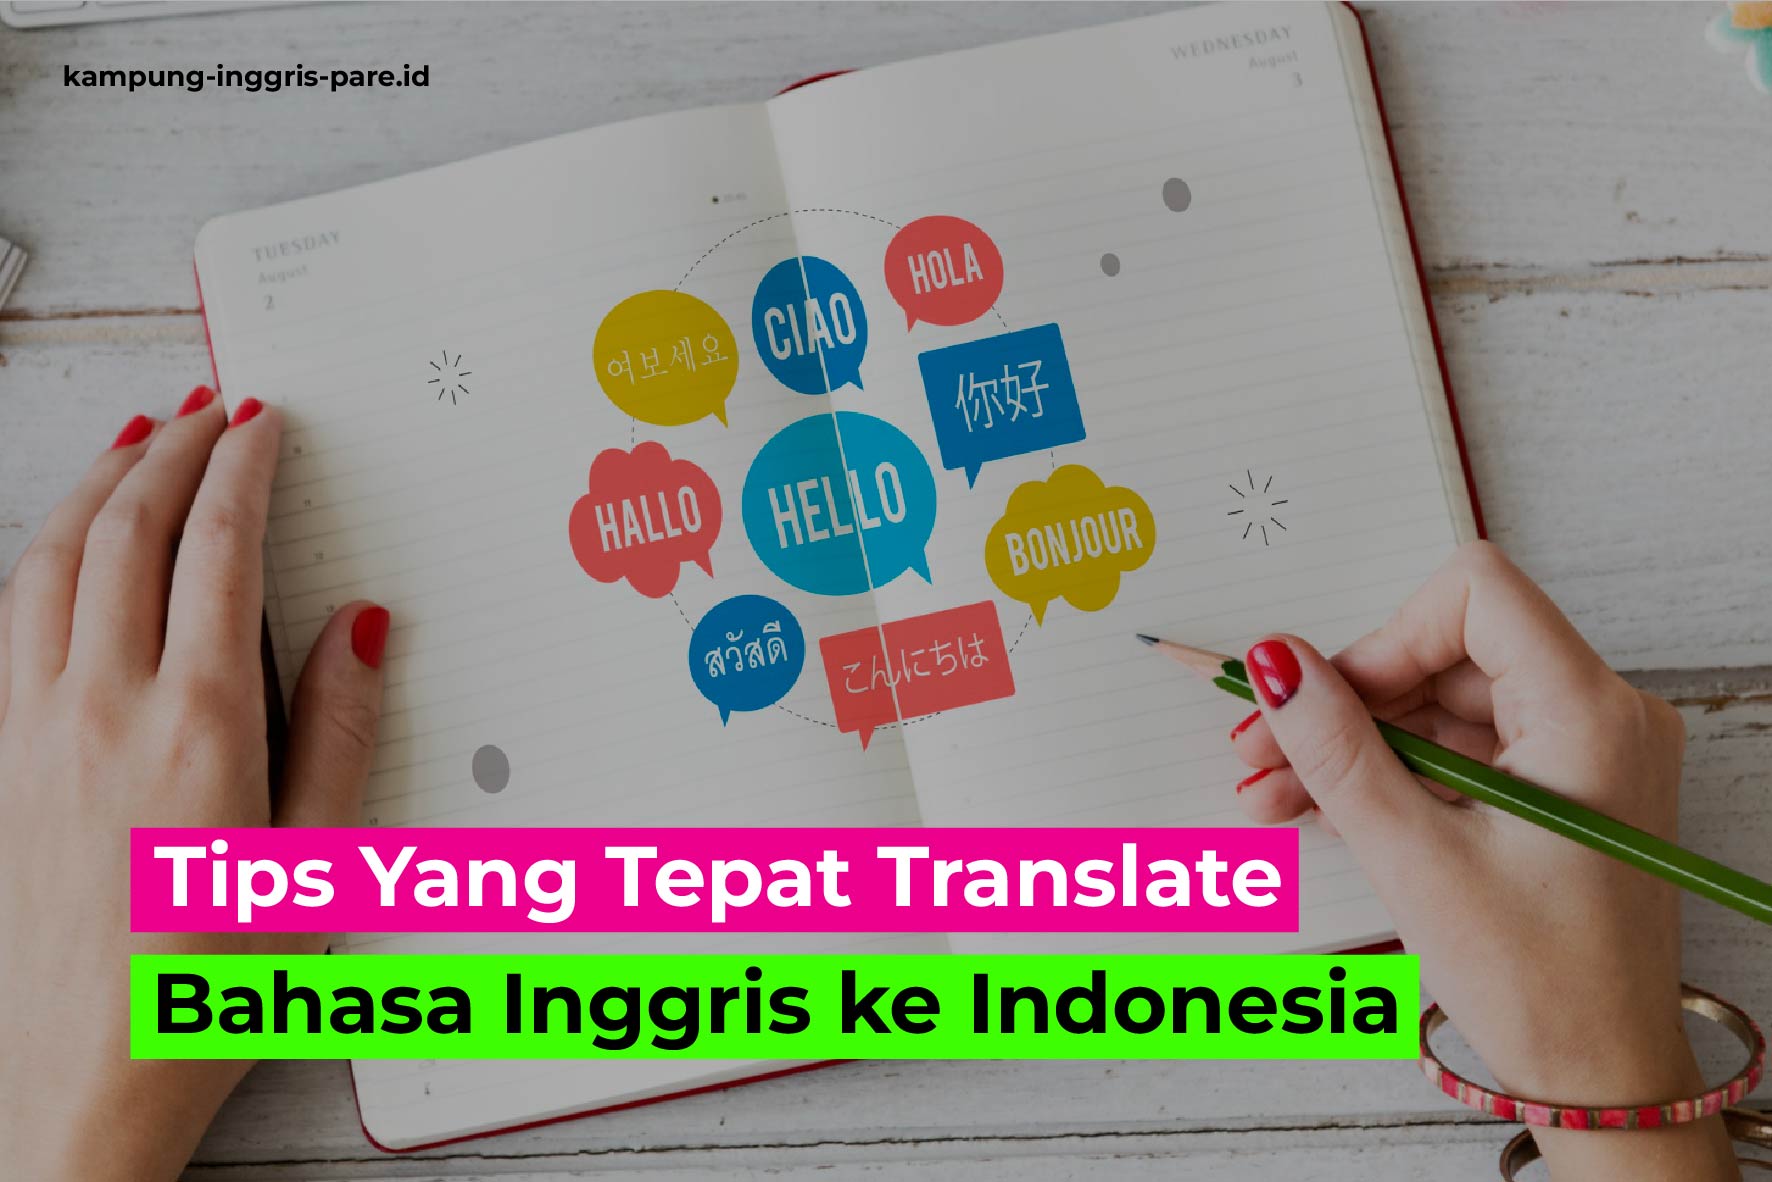 Tips Yang Tepat Translate Bahasa Inggris ke Indonesia-02